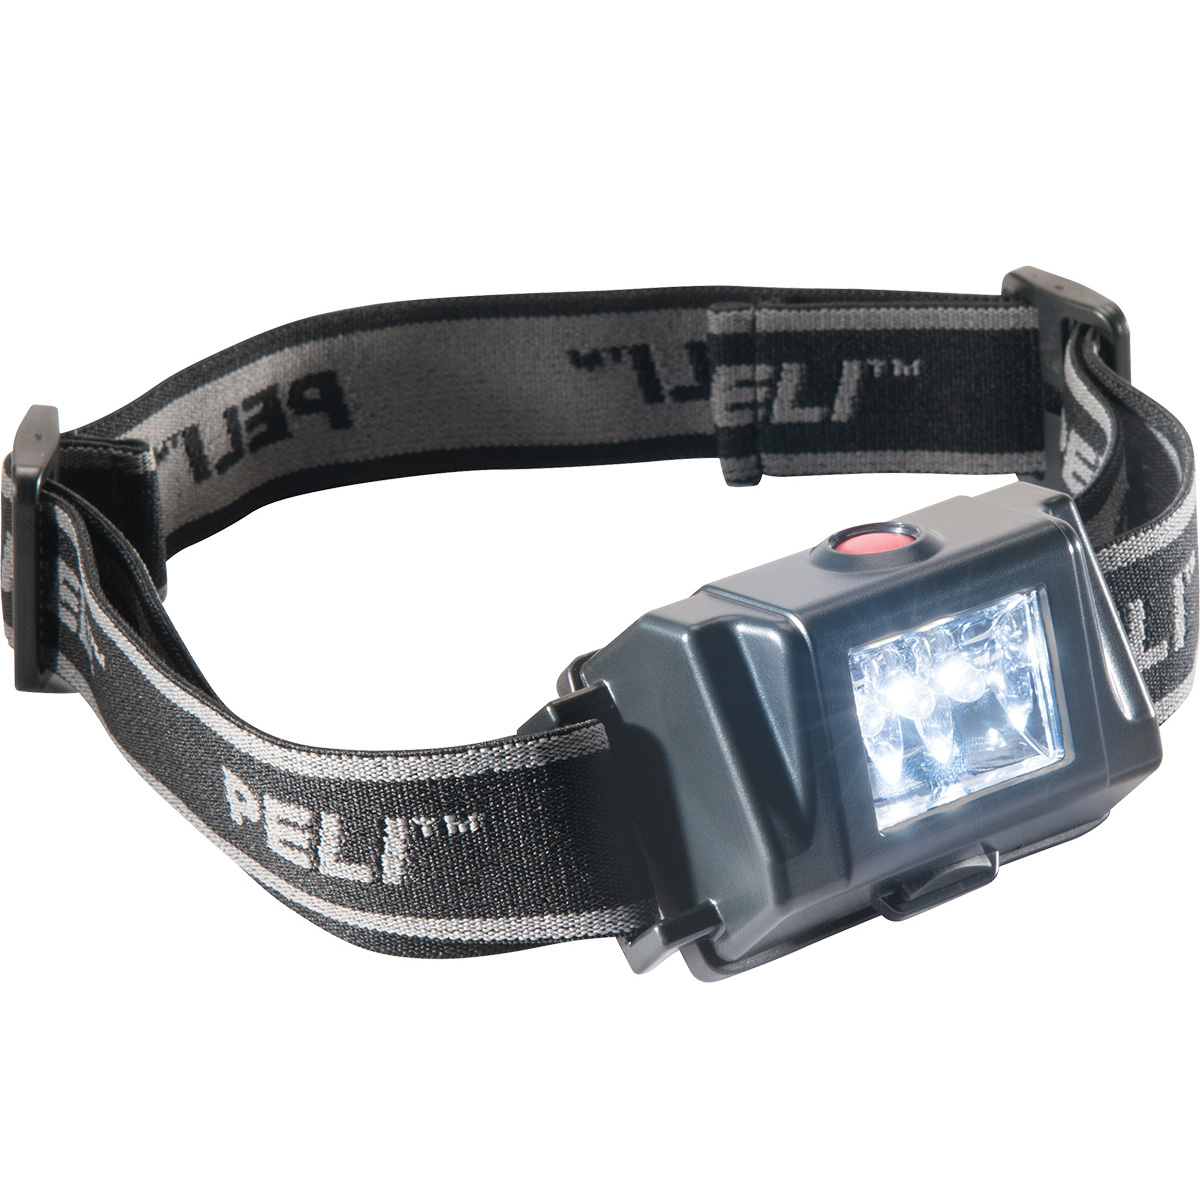 Взрывобезопасный фонарь Peli 2610 Zone 0 HeadsUp Lite™ LED ATEX налобный  2610-035-110E